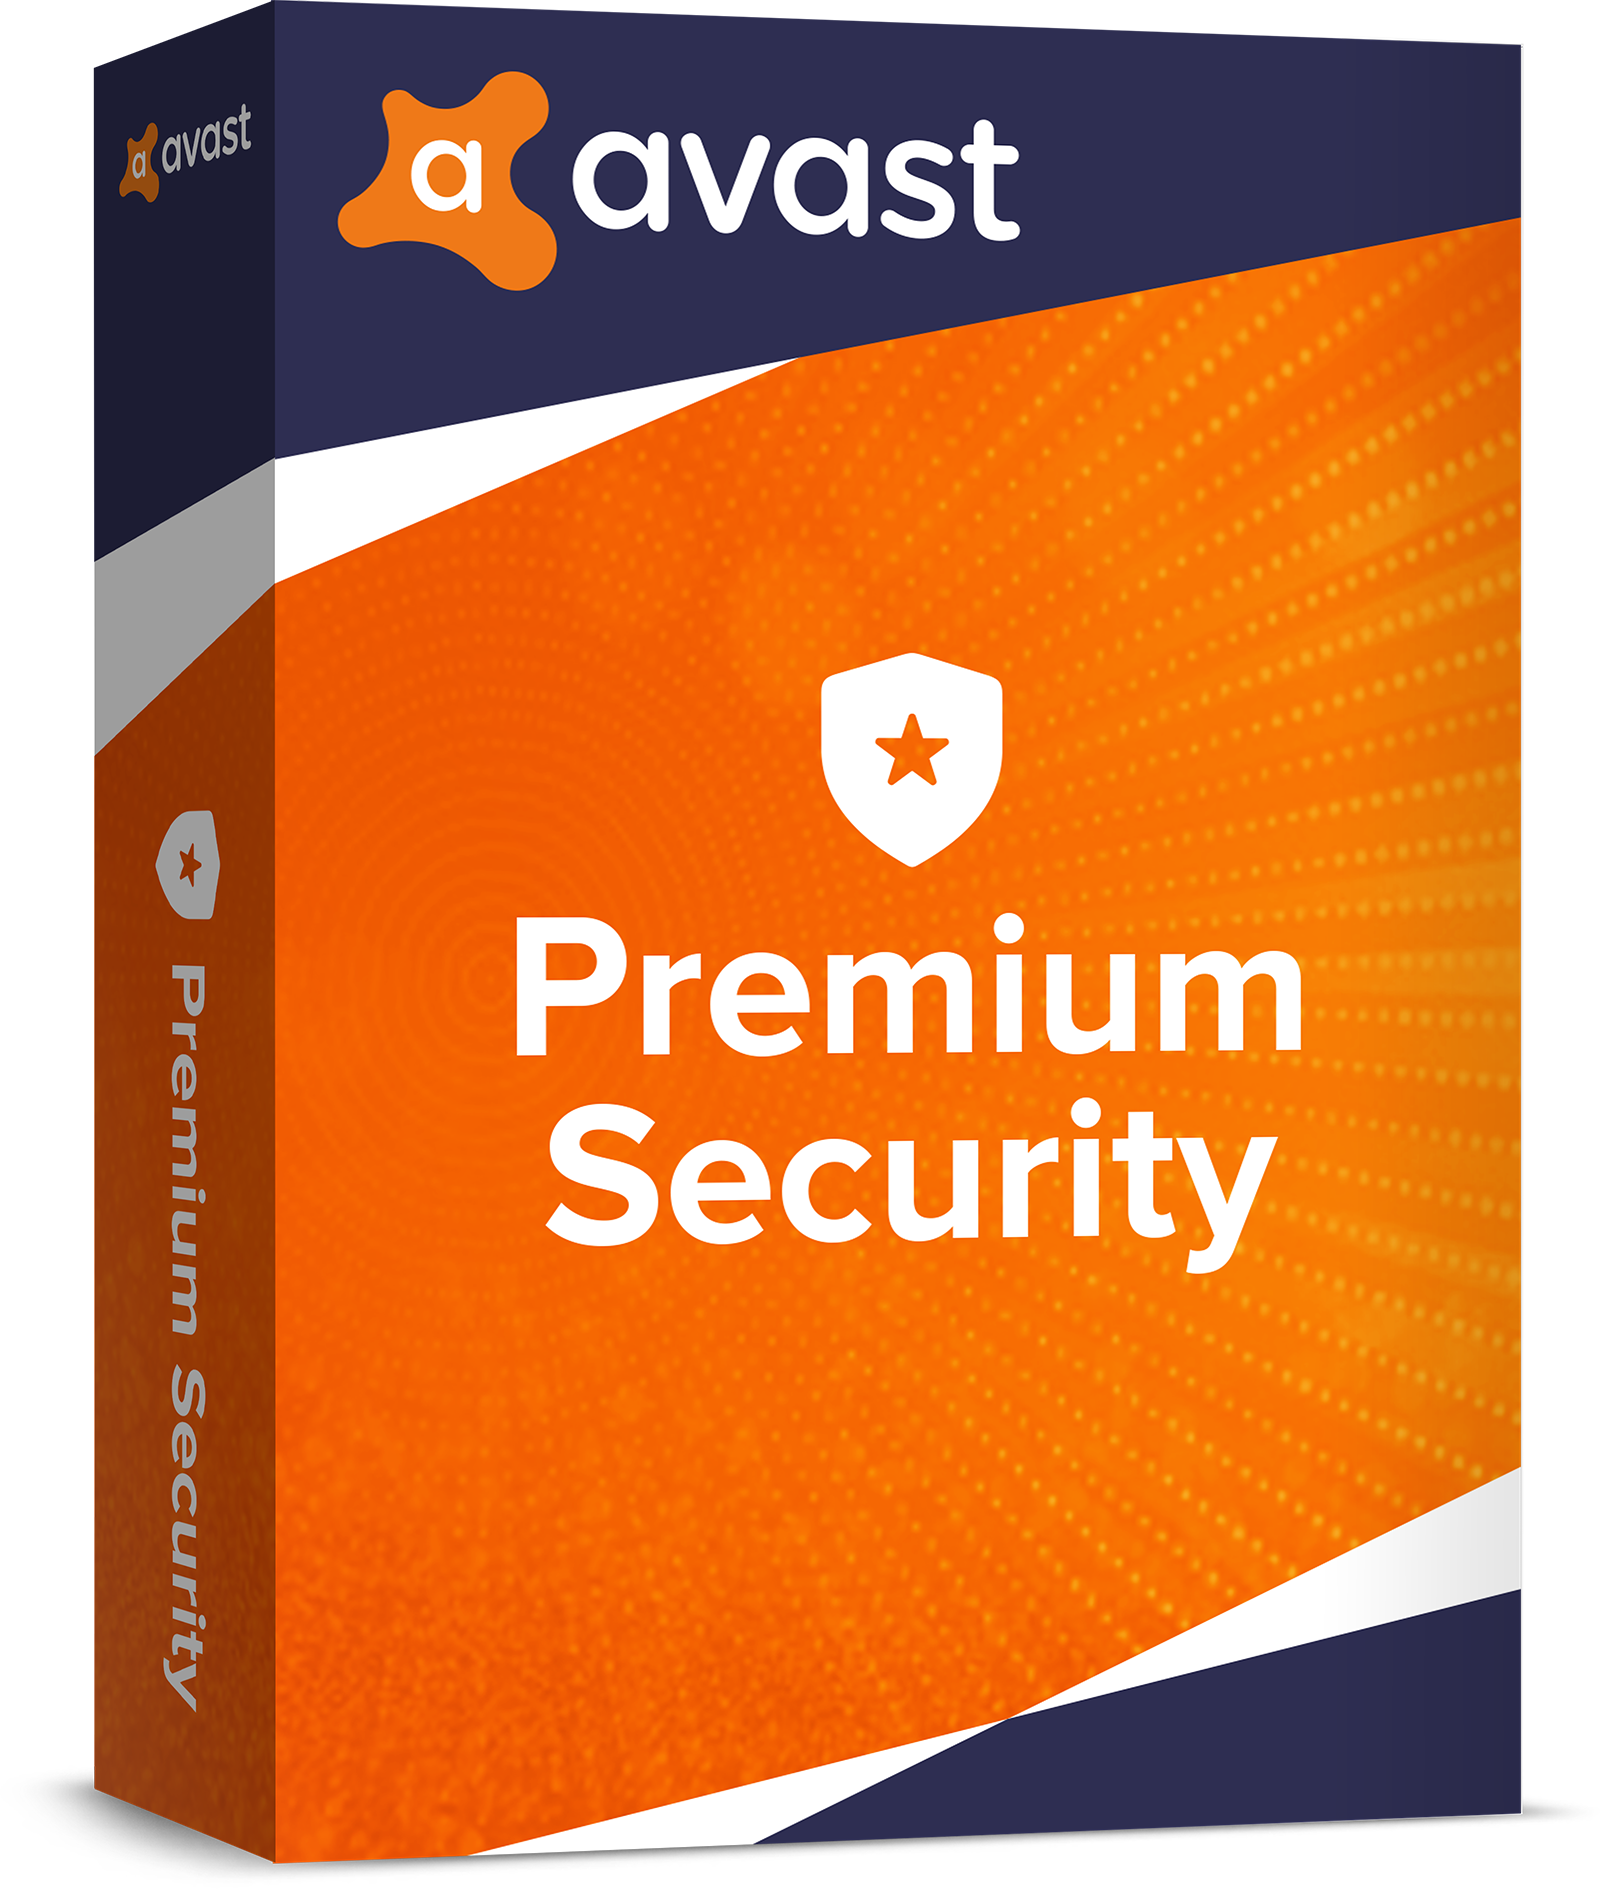  Avast Premium Security